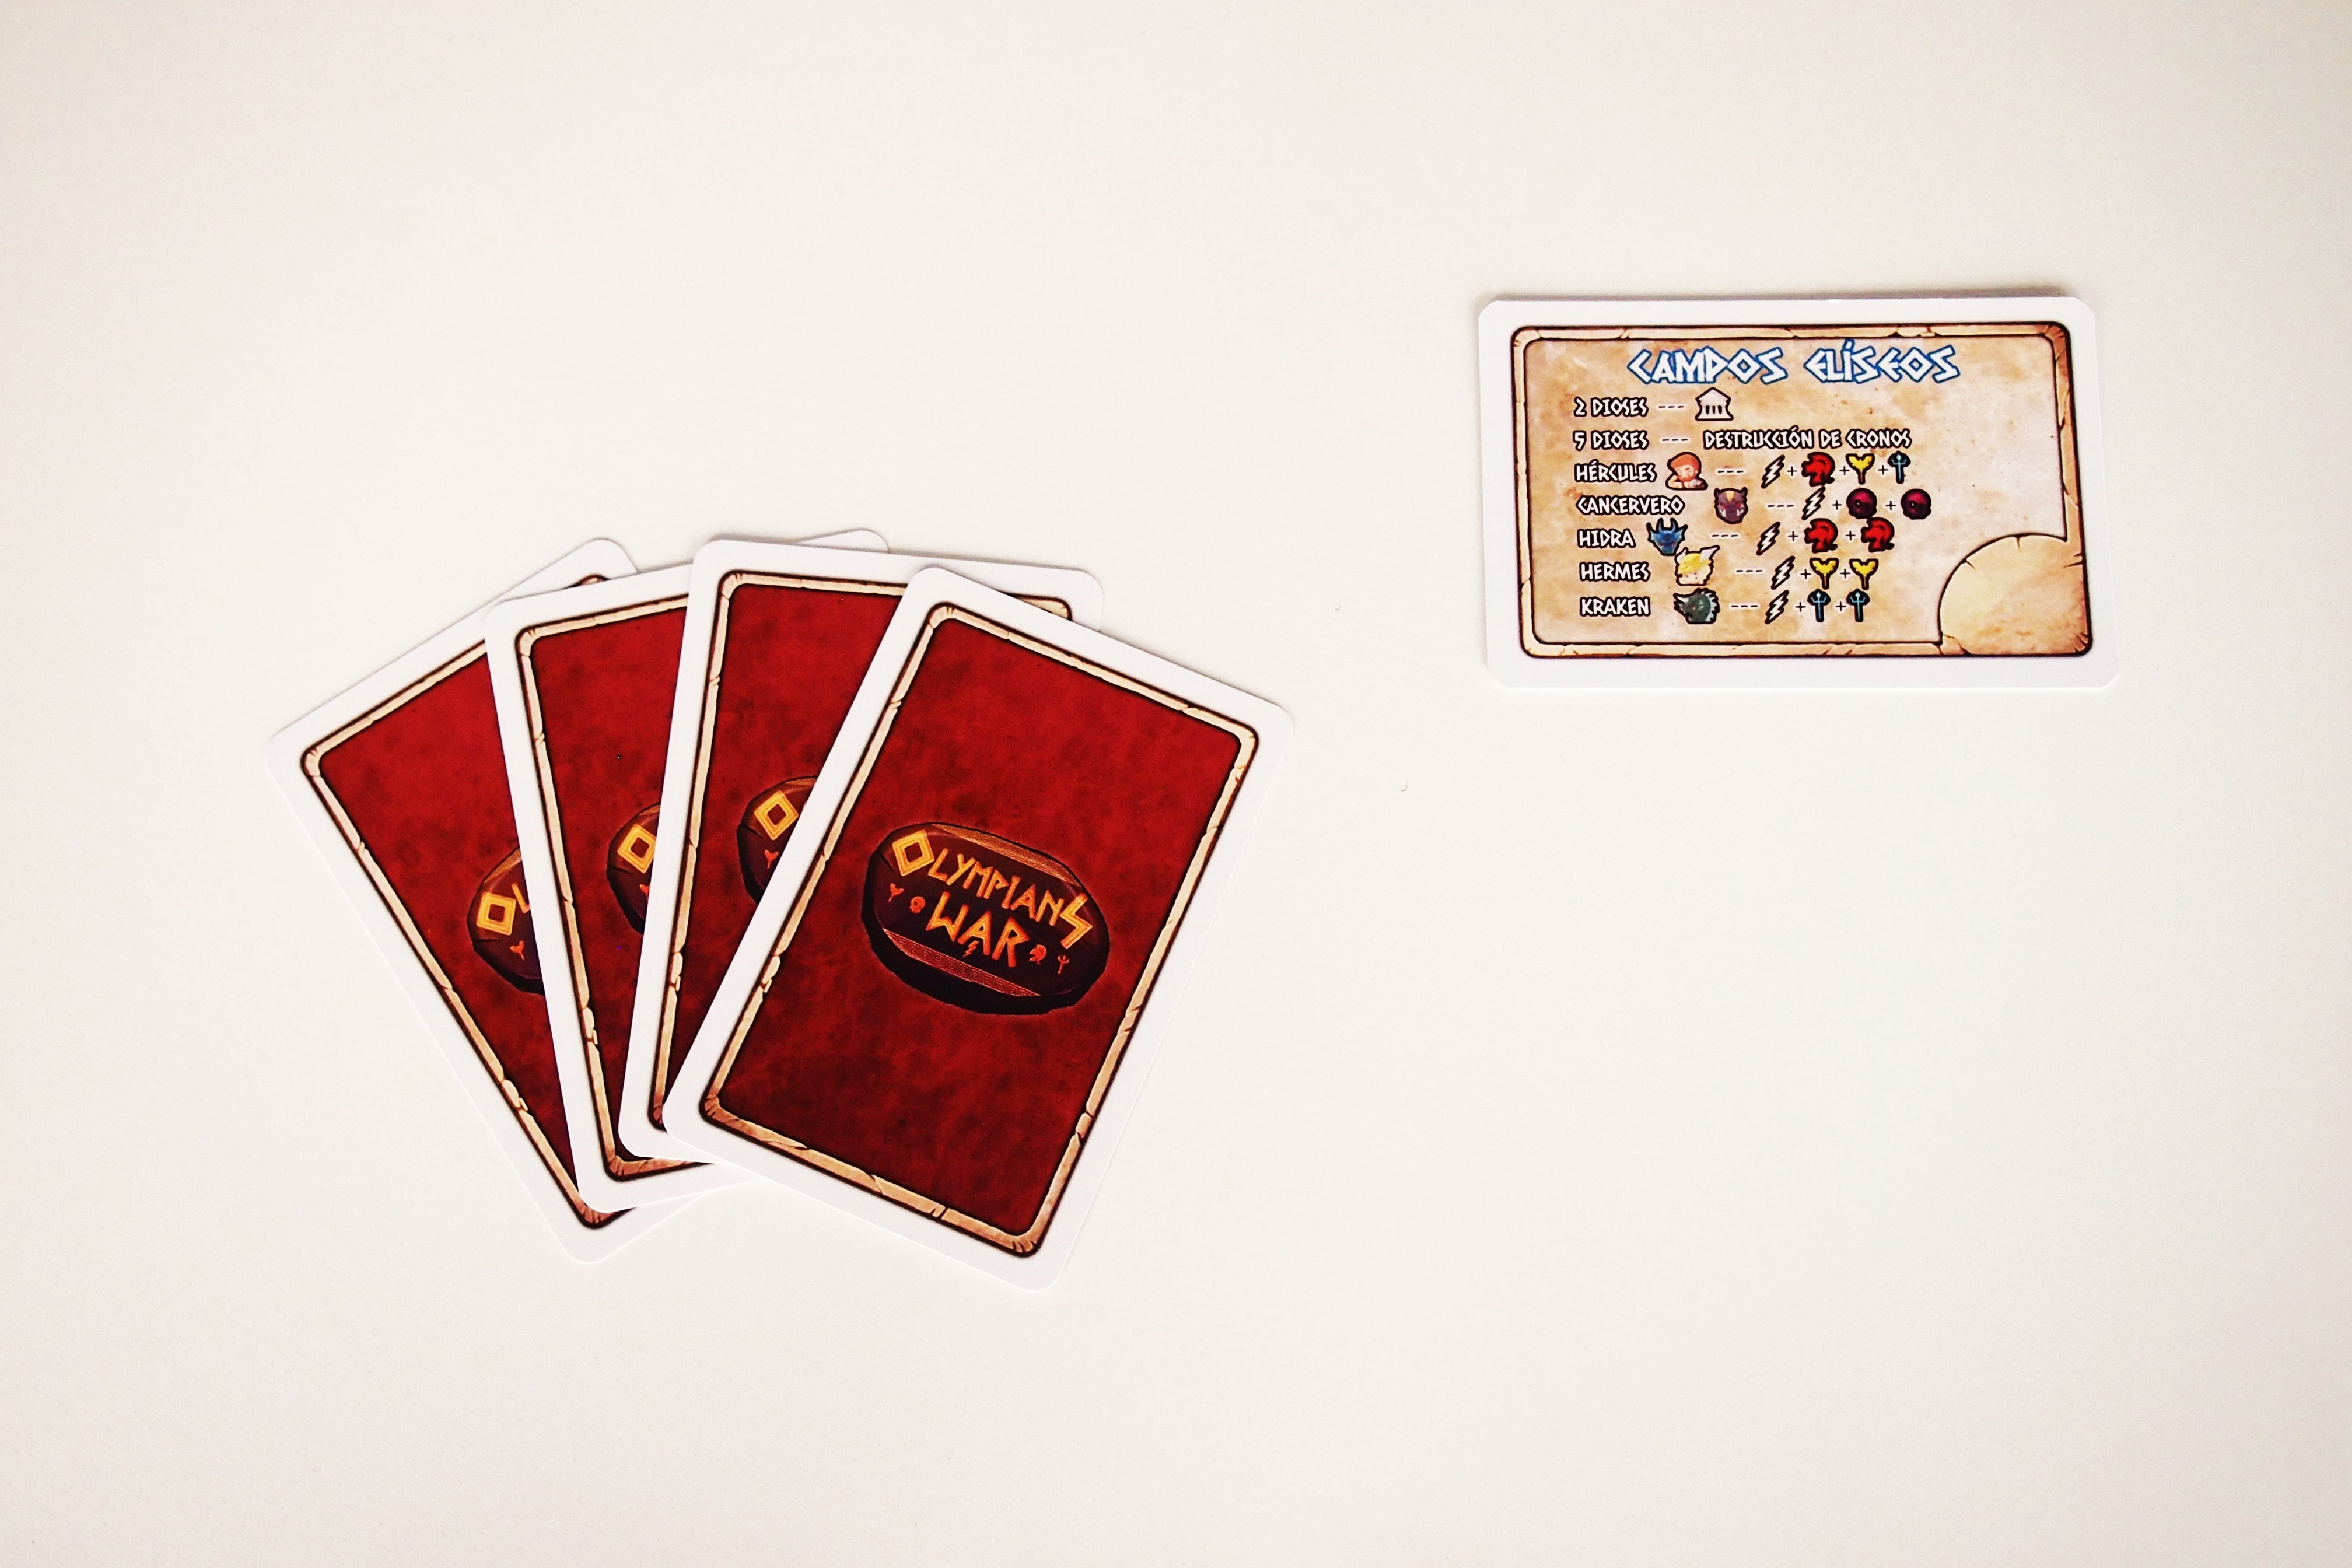 Cada jugador recibe cuatro cartas y sus Campos Elíseos. 